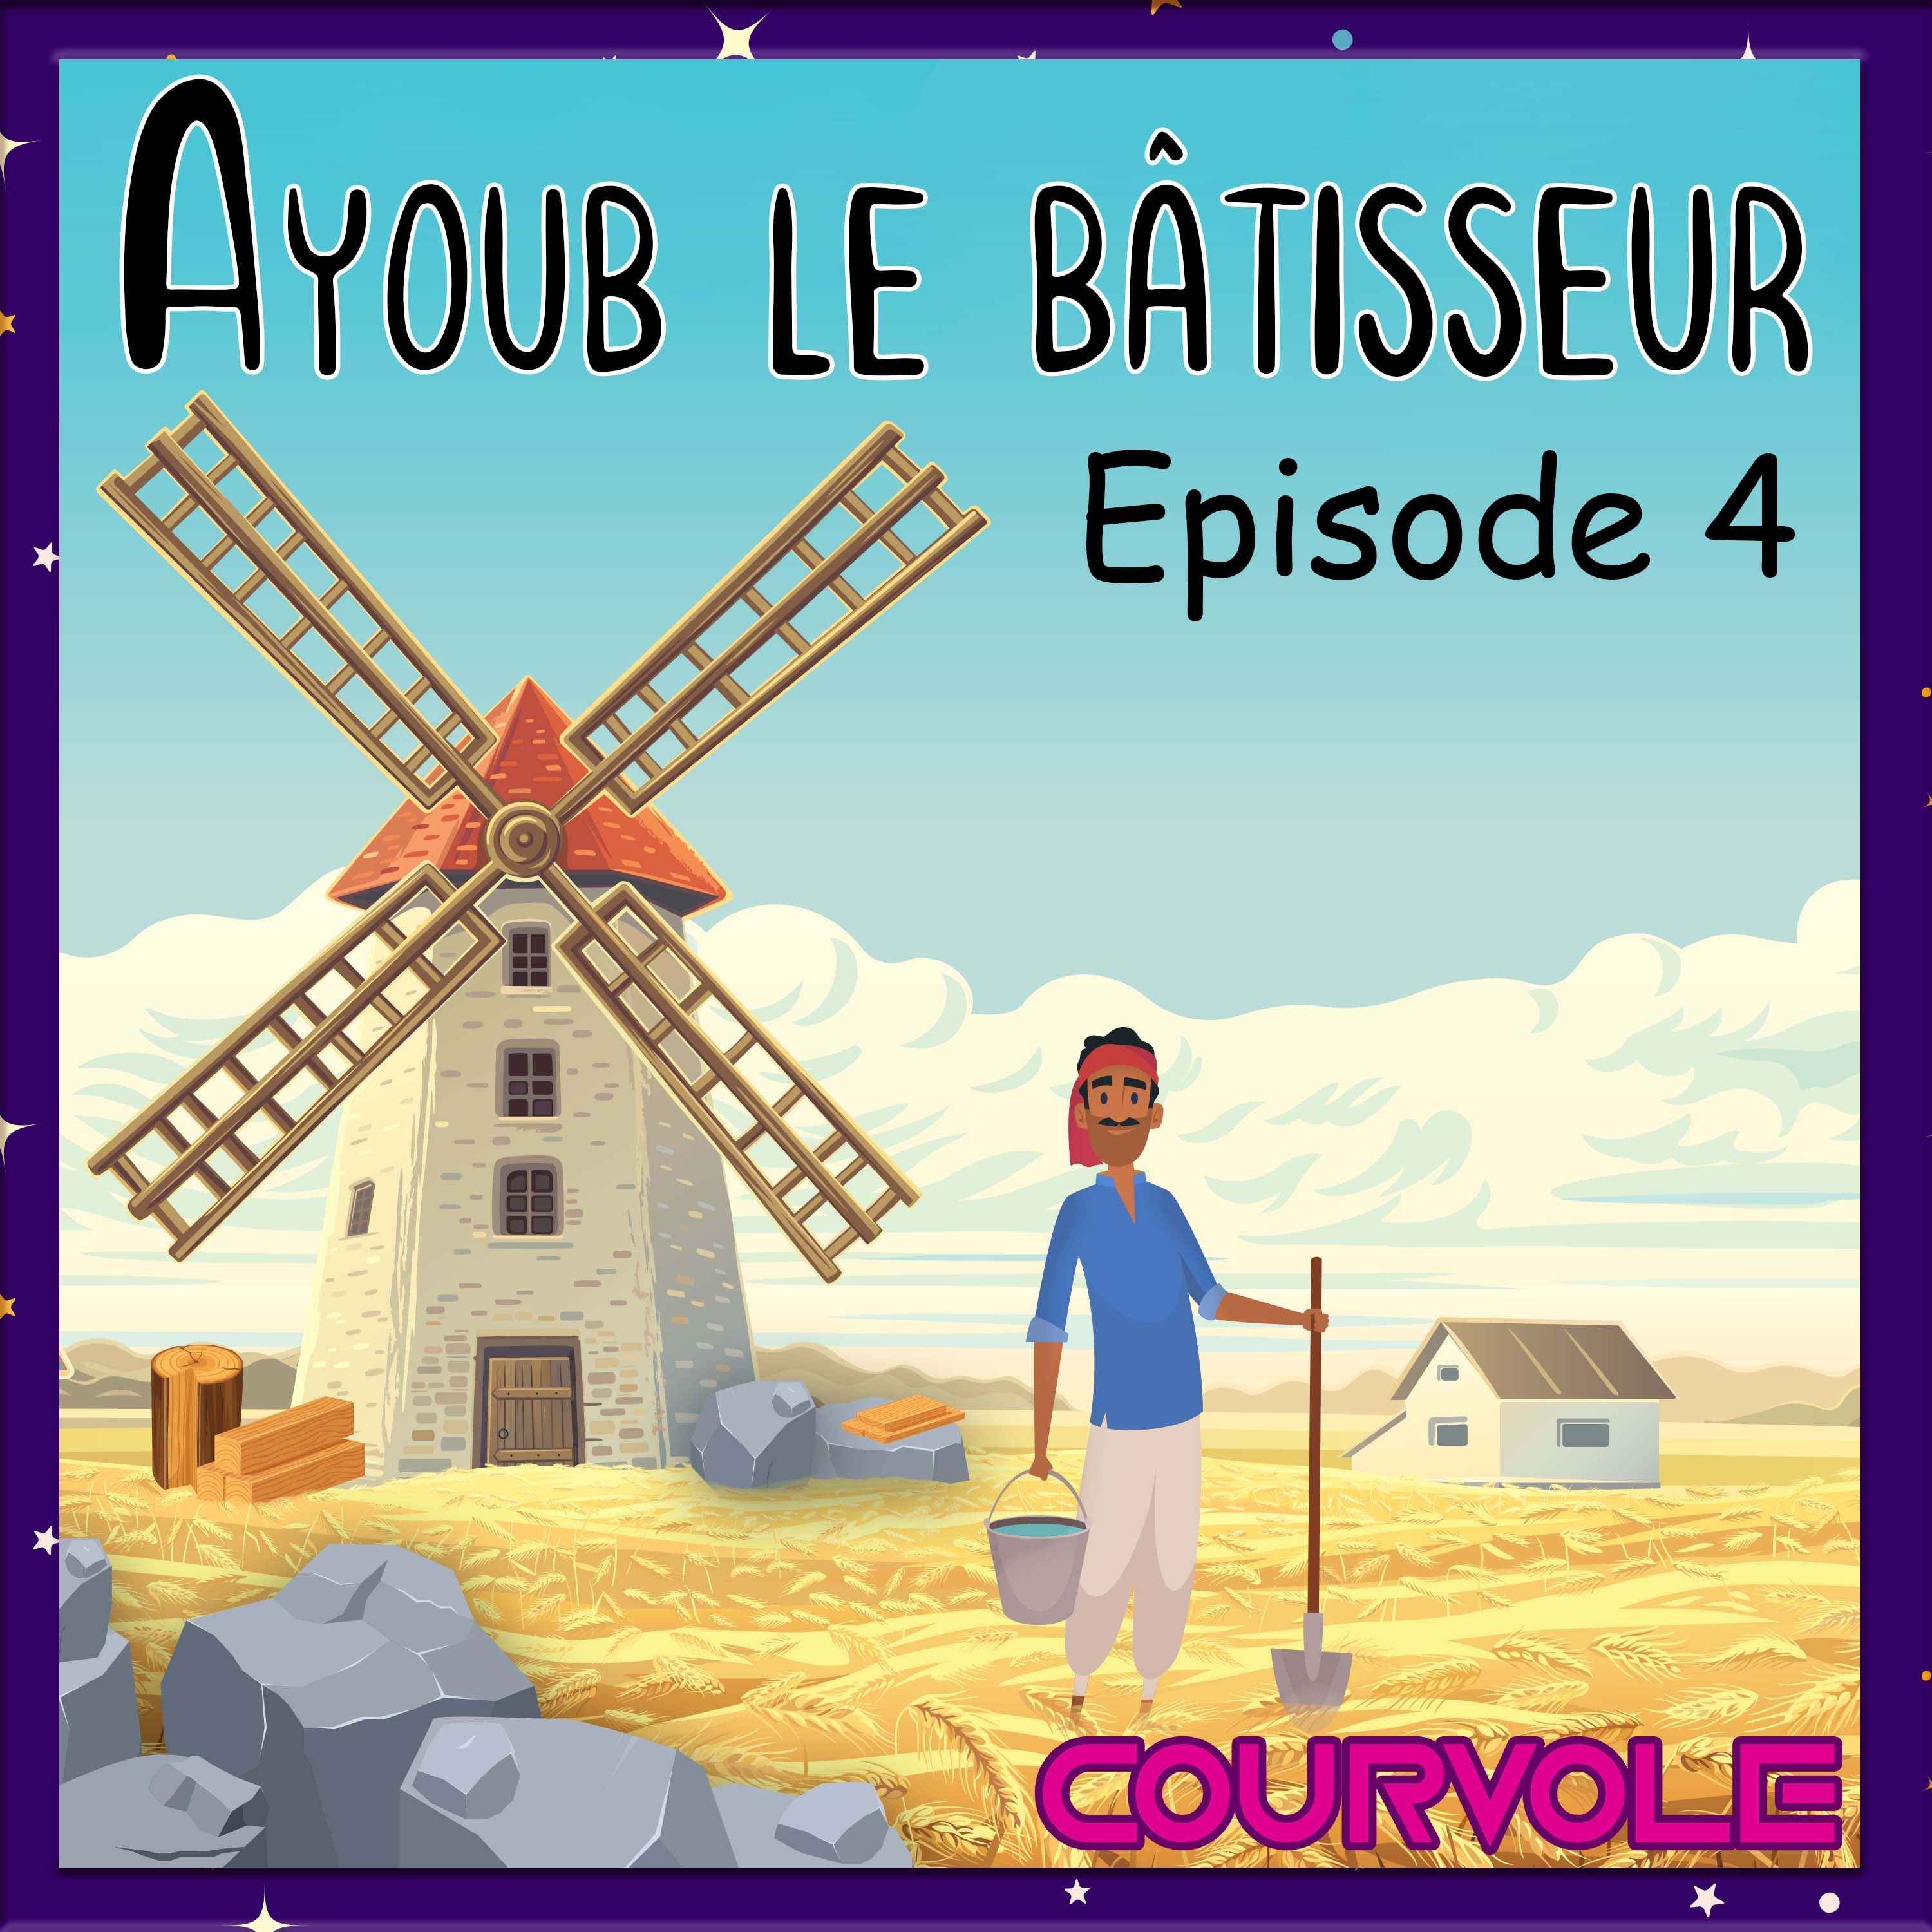 Ayoub le bâtisseur - Episode 4 Image